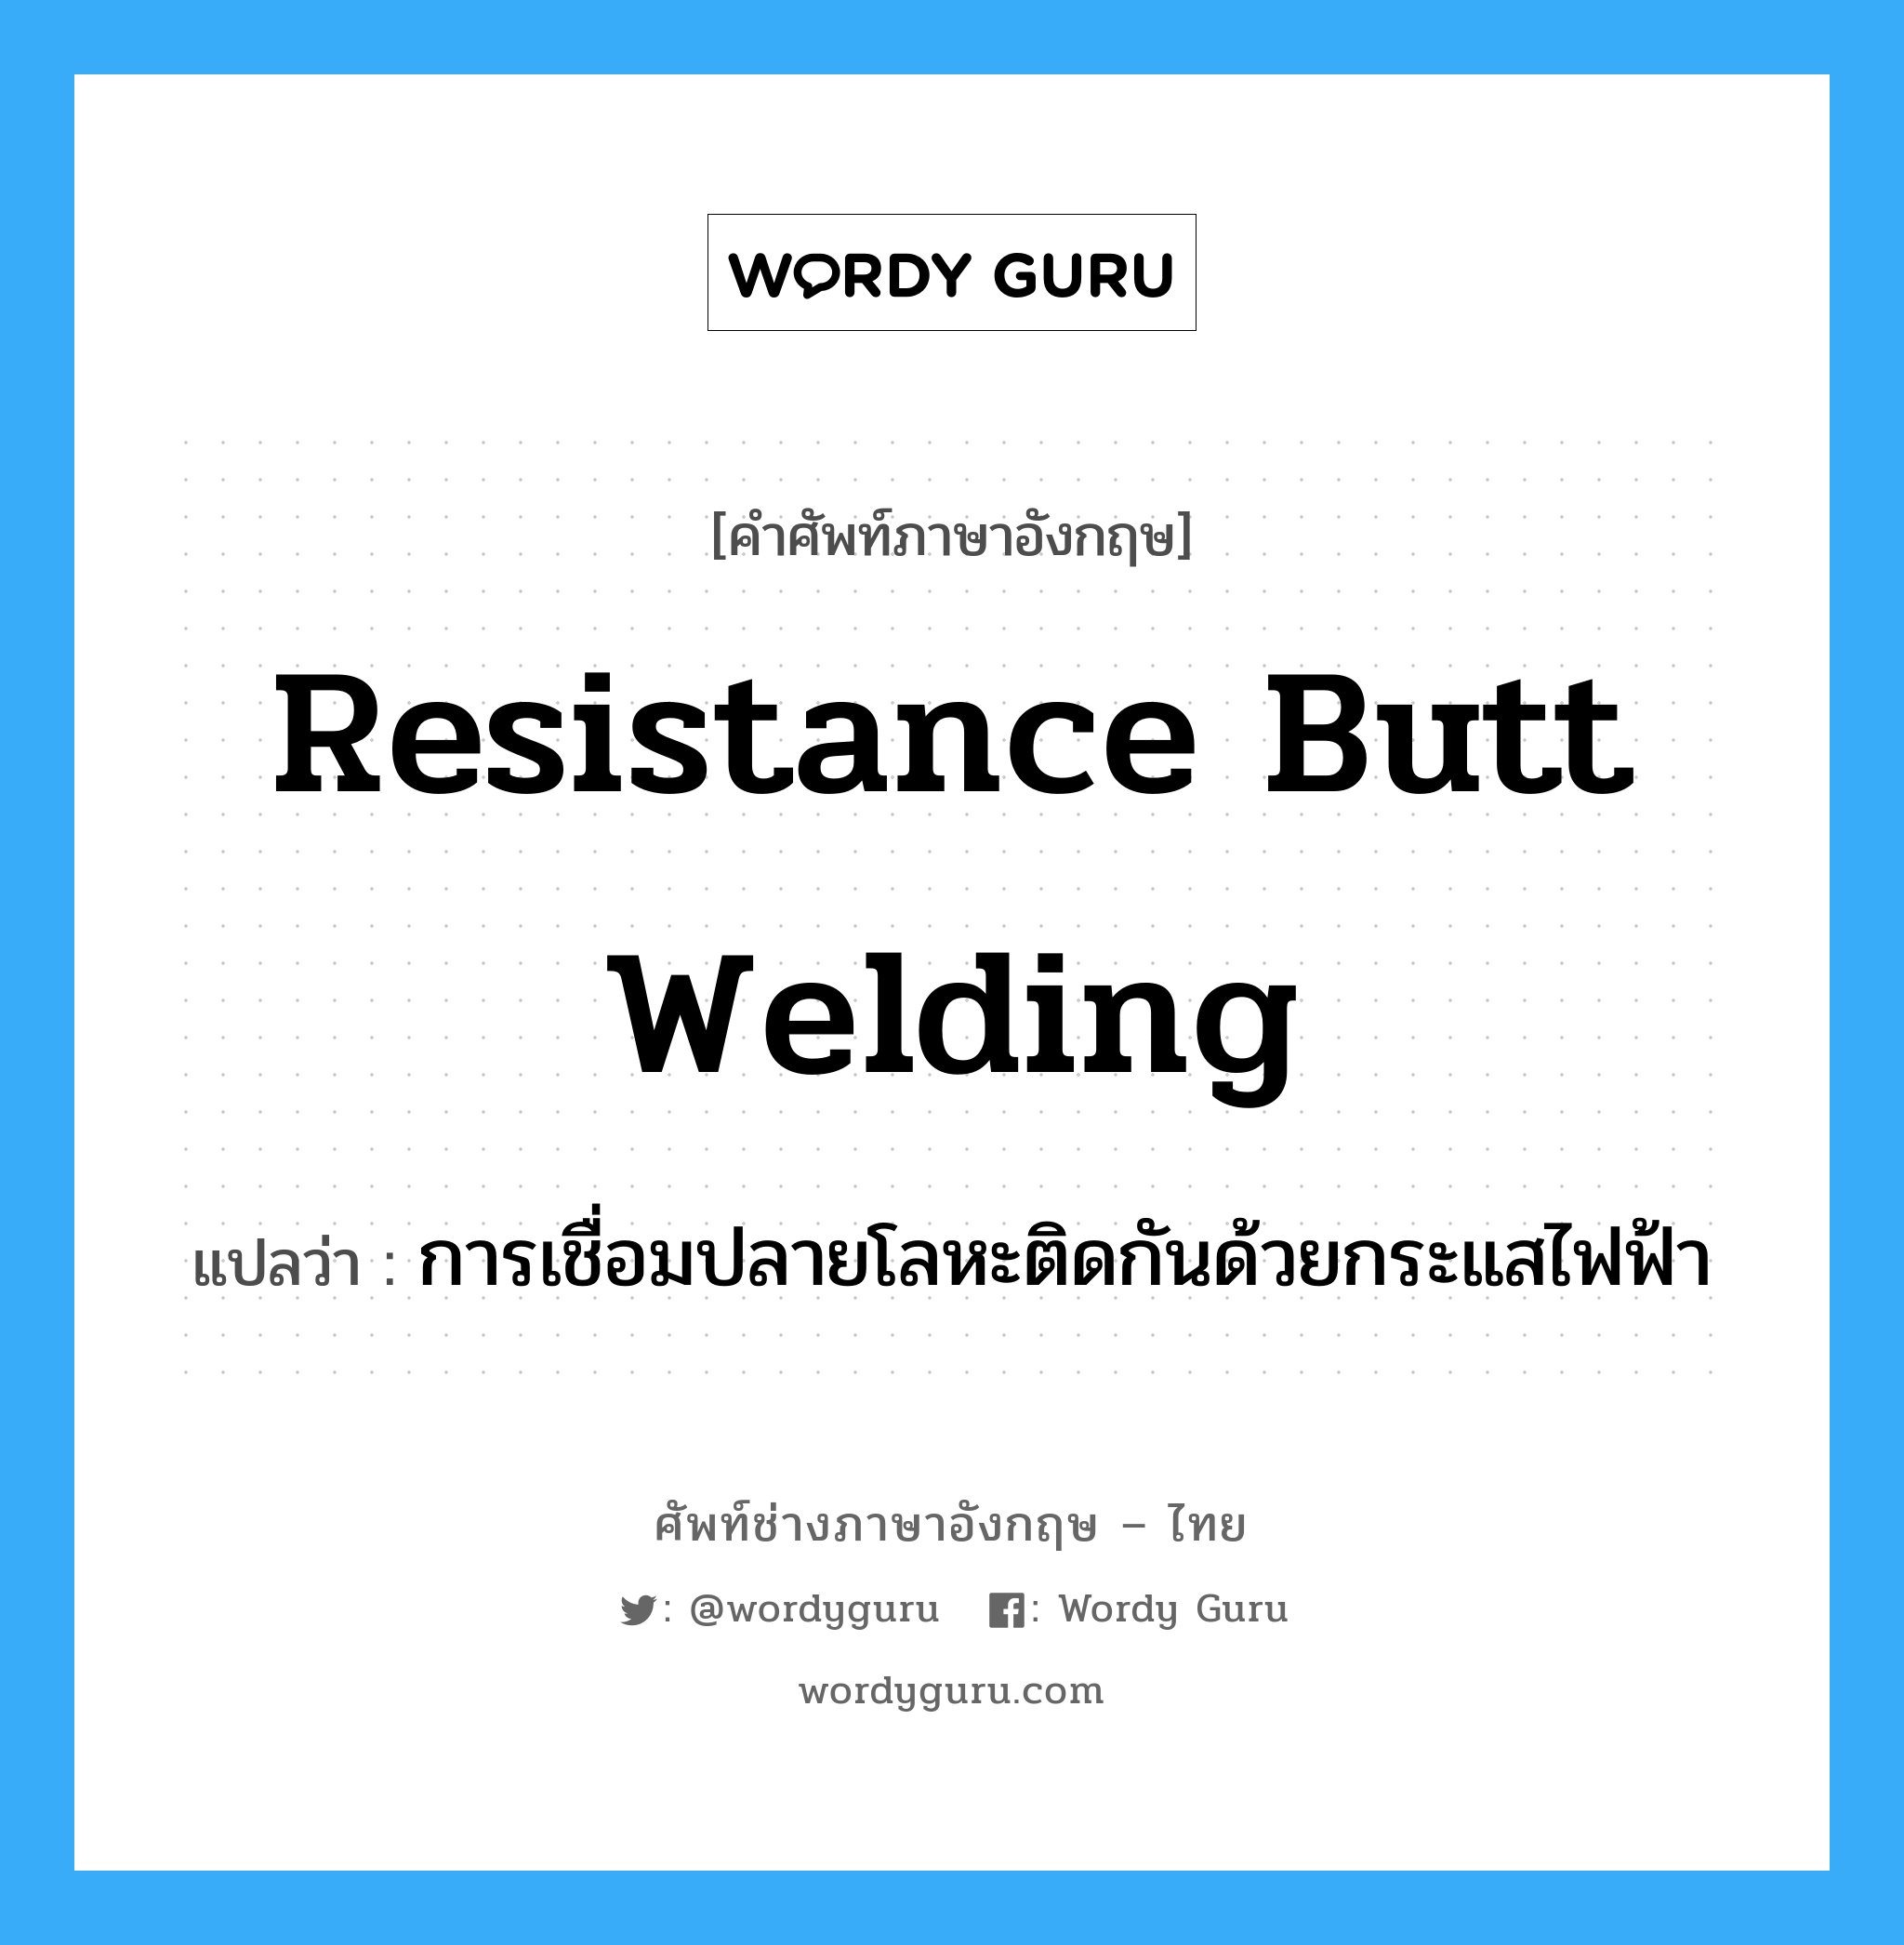 resistance butt welding แปลว่า?, คำศัพท์ช่างภาษาอังกฤษ - ไทย resistance butt welding คำศัพท์ภาษาอังกฤษ resistance butt welding แปลว่า การเชื่อมปลายโลหะติดกันด้วยกระแสไฟฟ้า